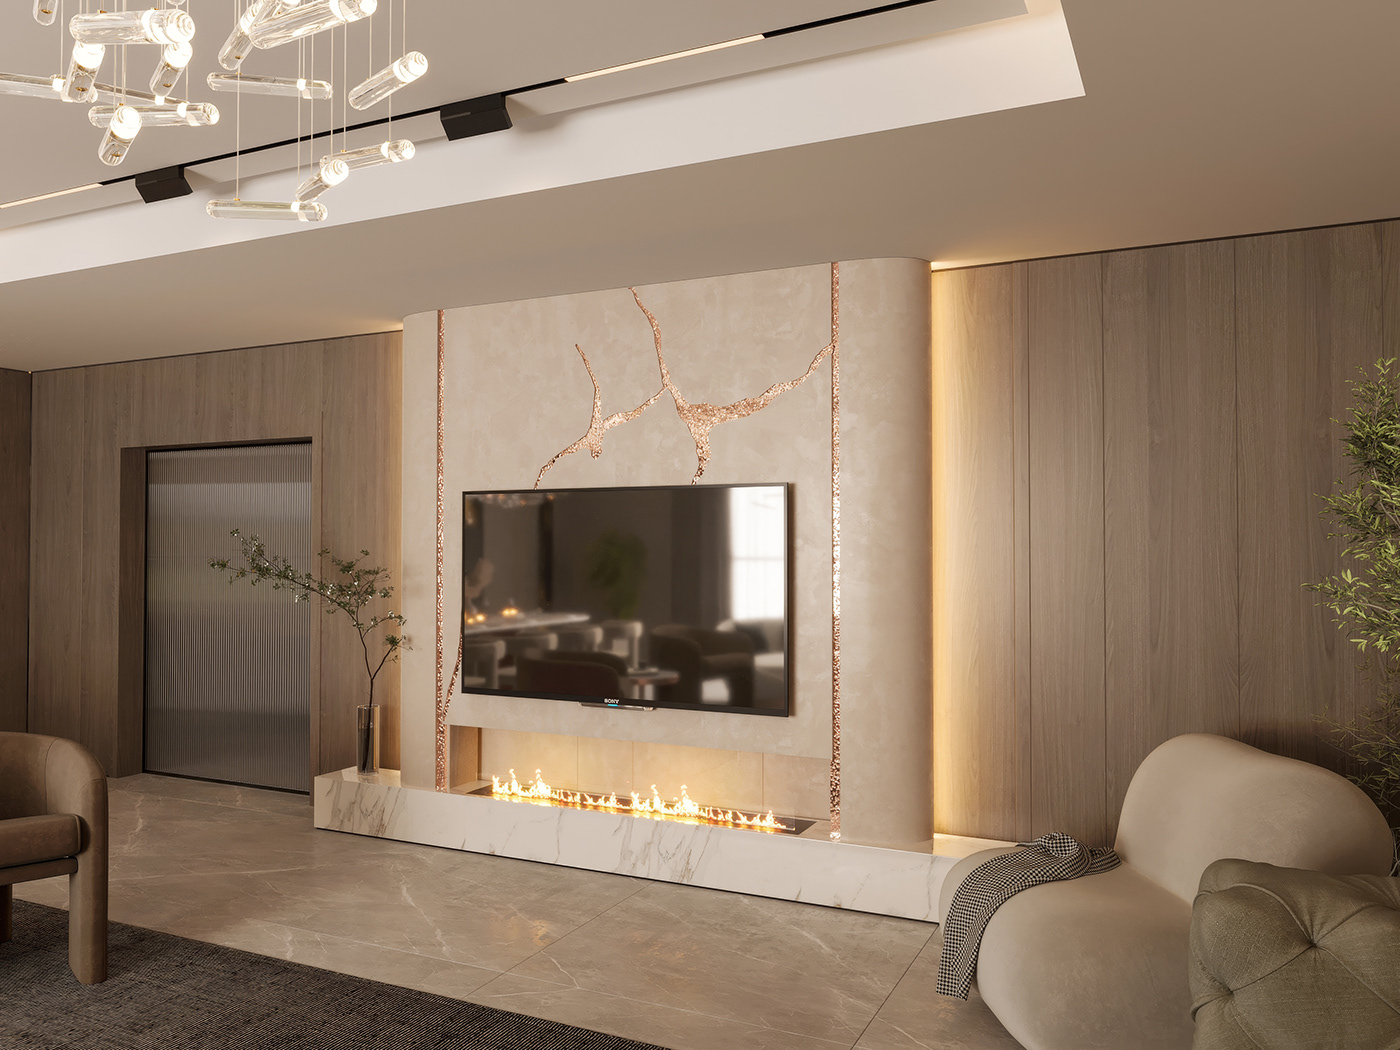 design 3ds max Render Luxury Design corona render  living room interior design  CGI Interior living room design